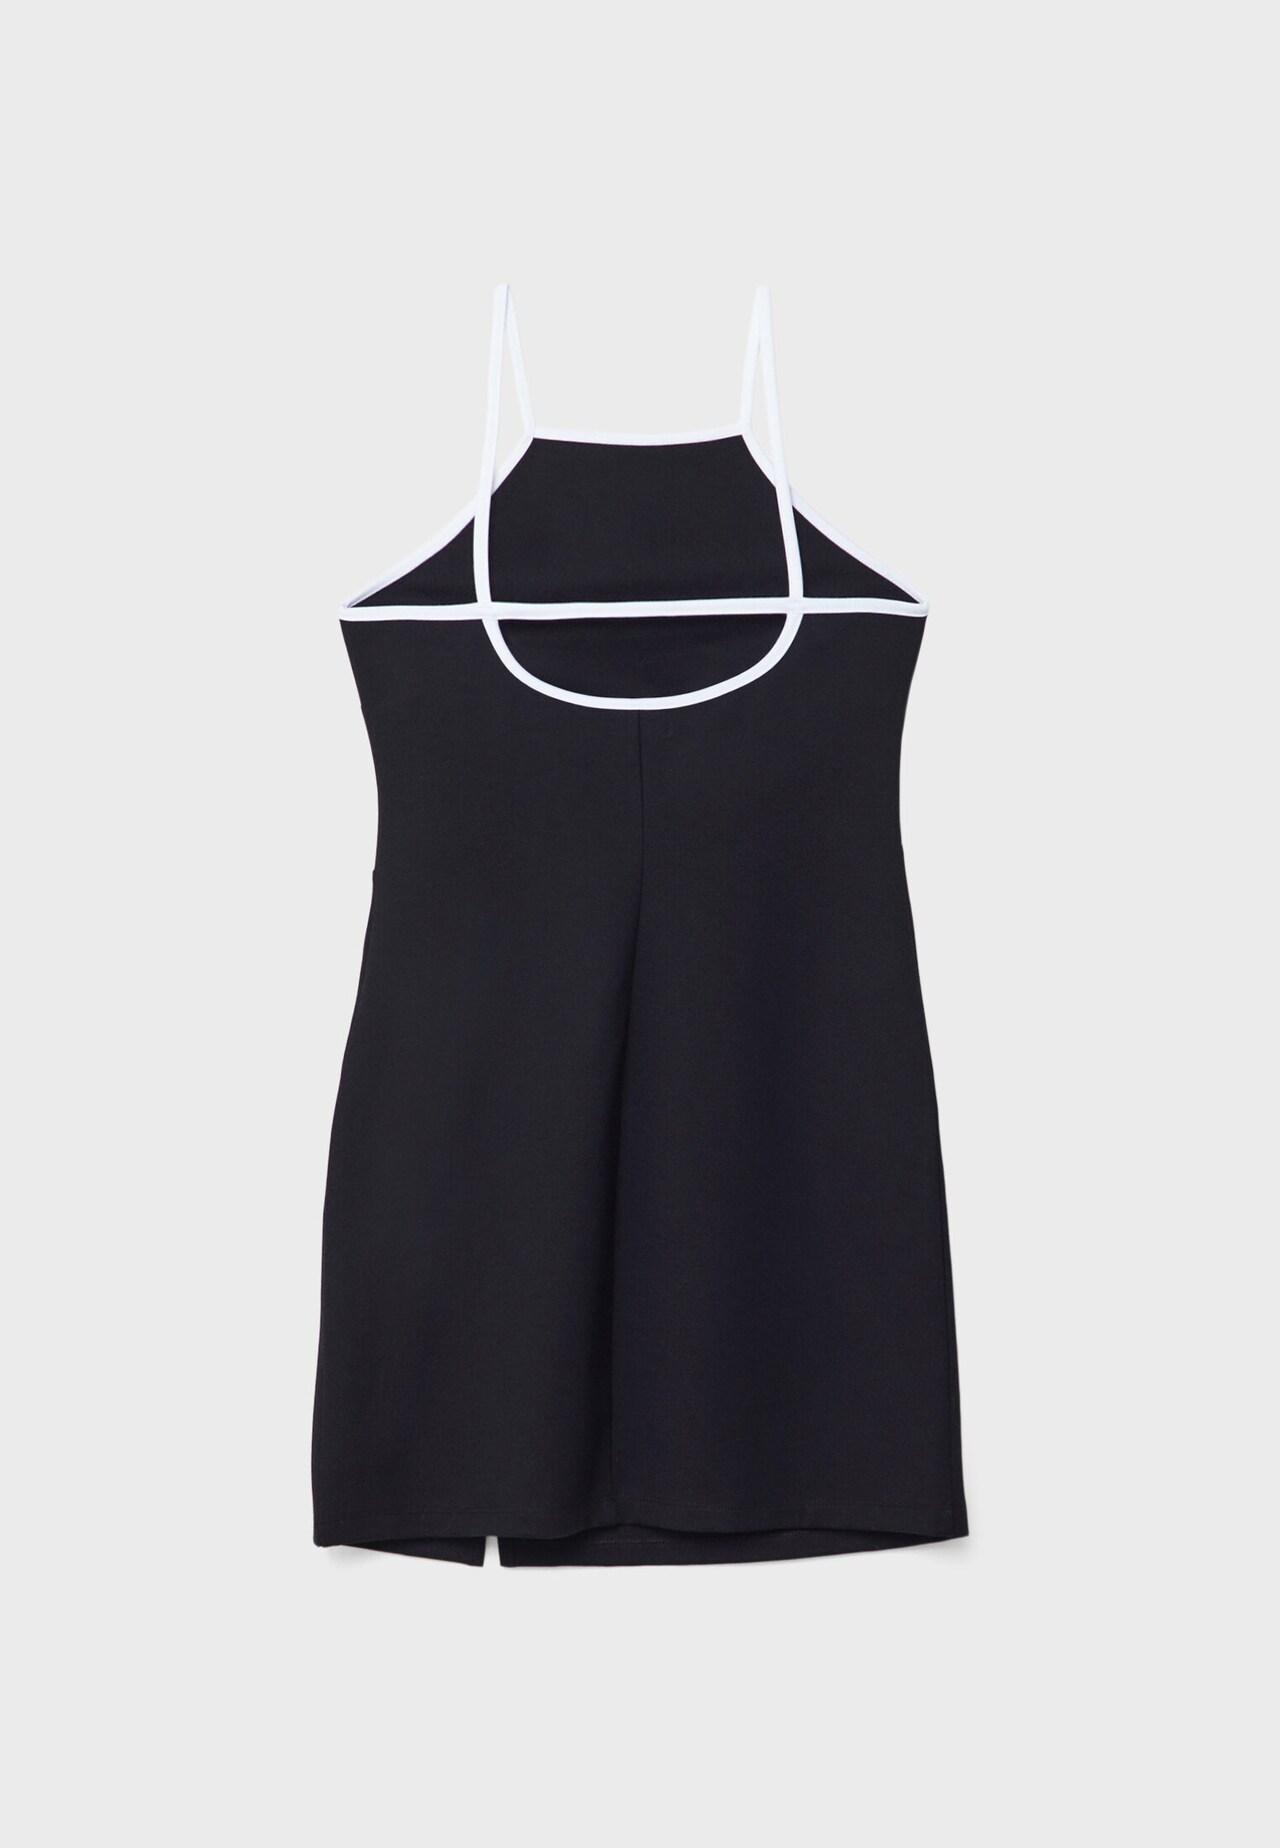 Black Tank Top Dress - Minit Fashion